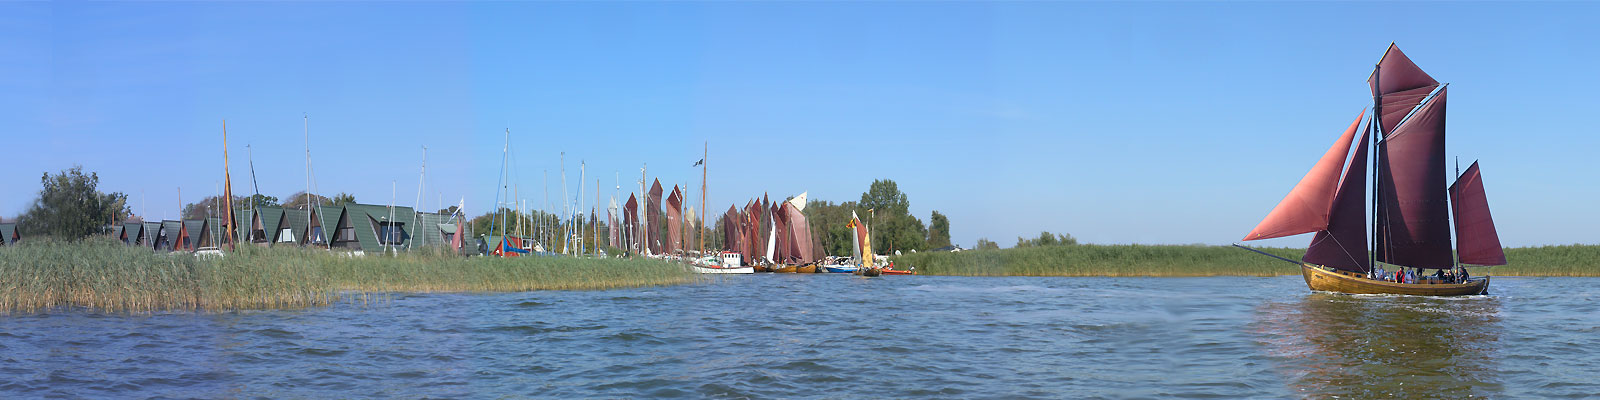 Panorama: Althagen Zeesboot - Motivnummer: fdz-ahr-07